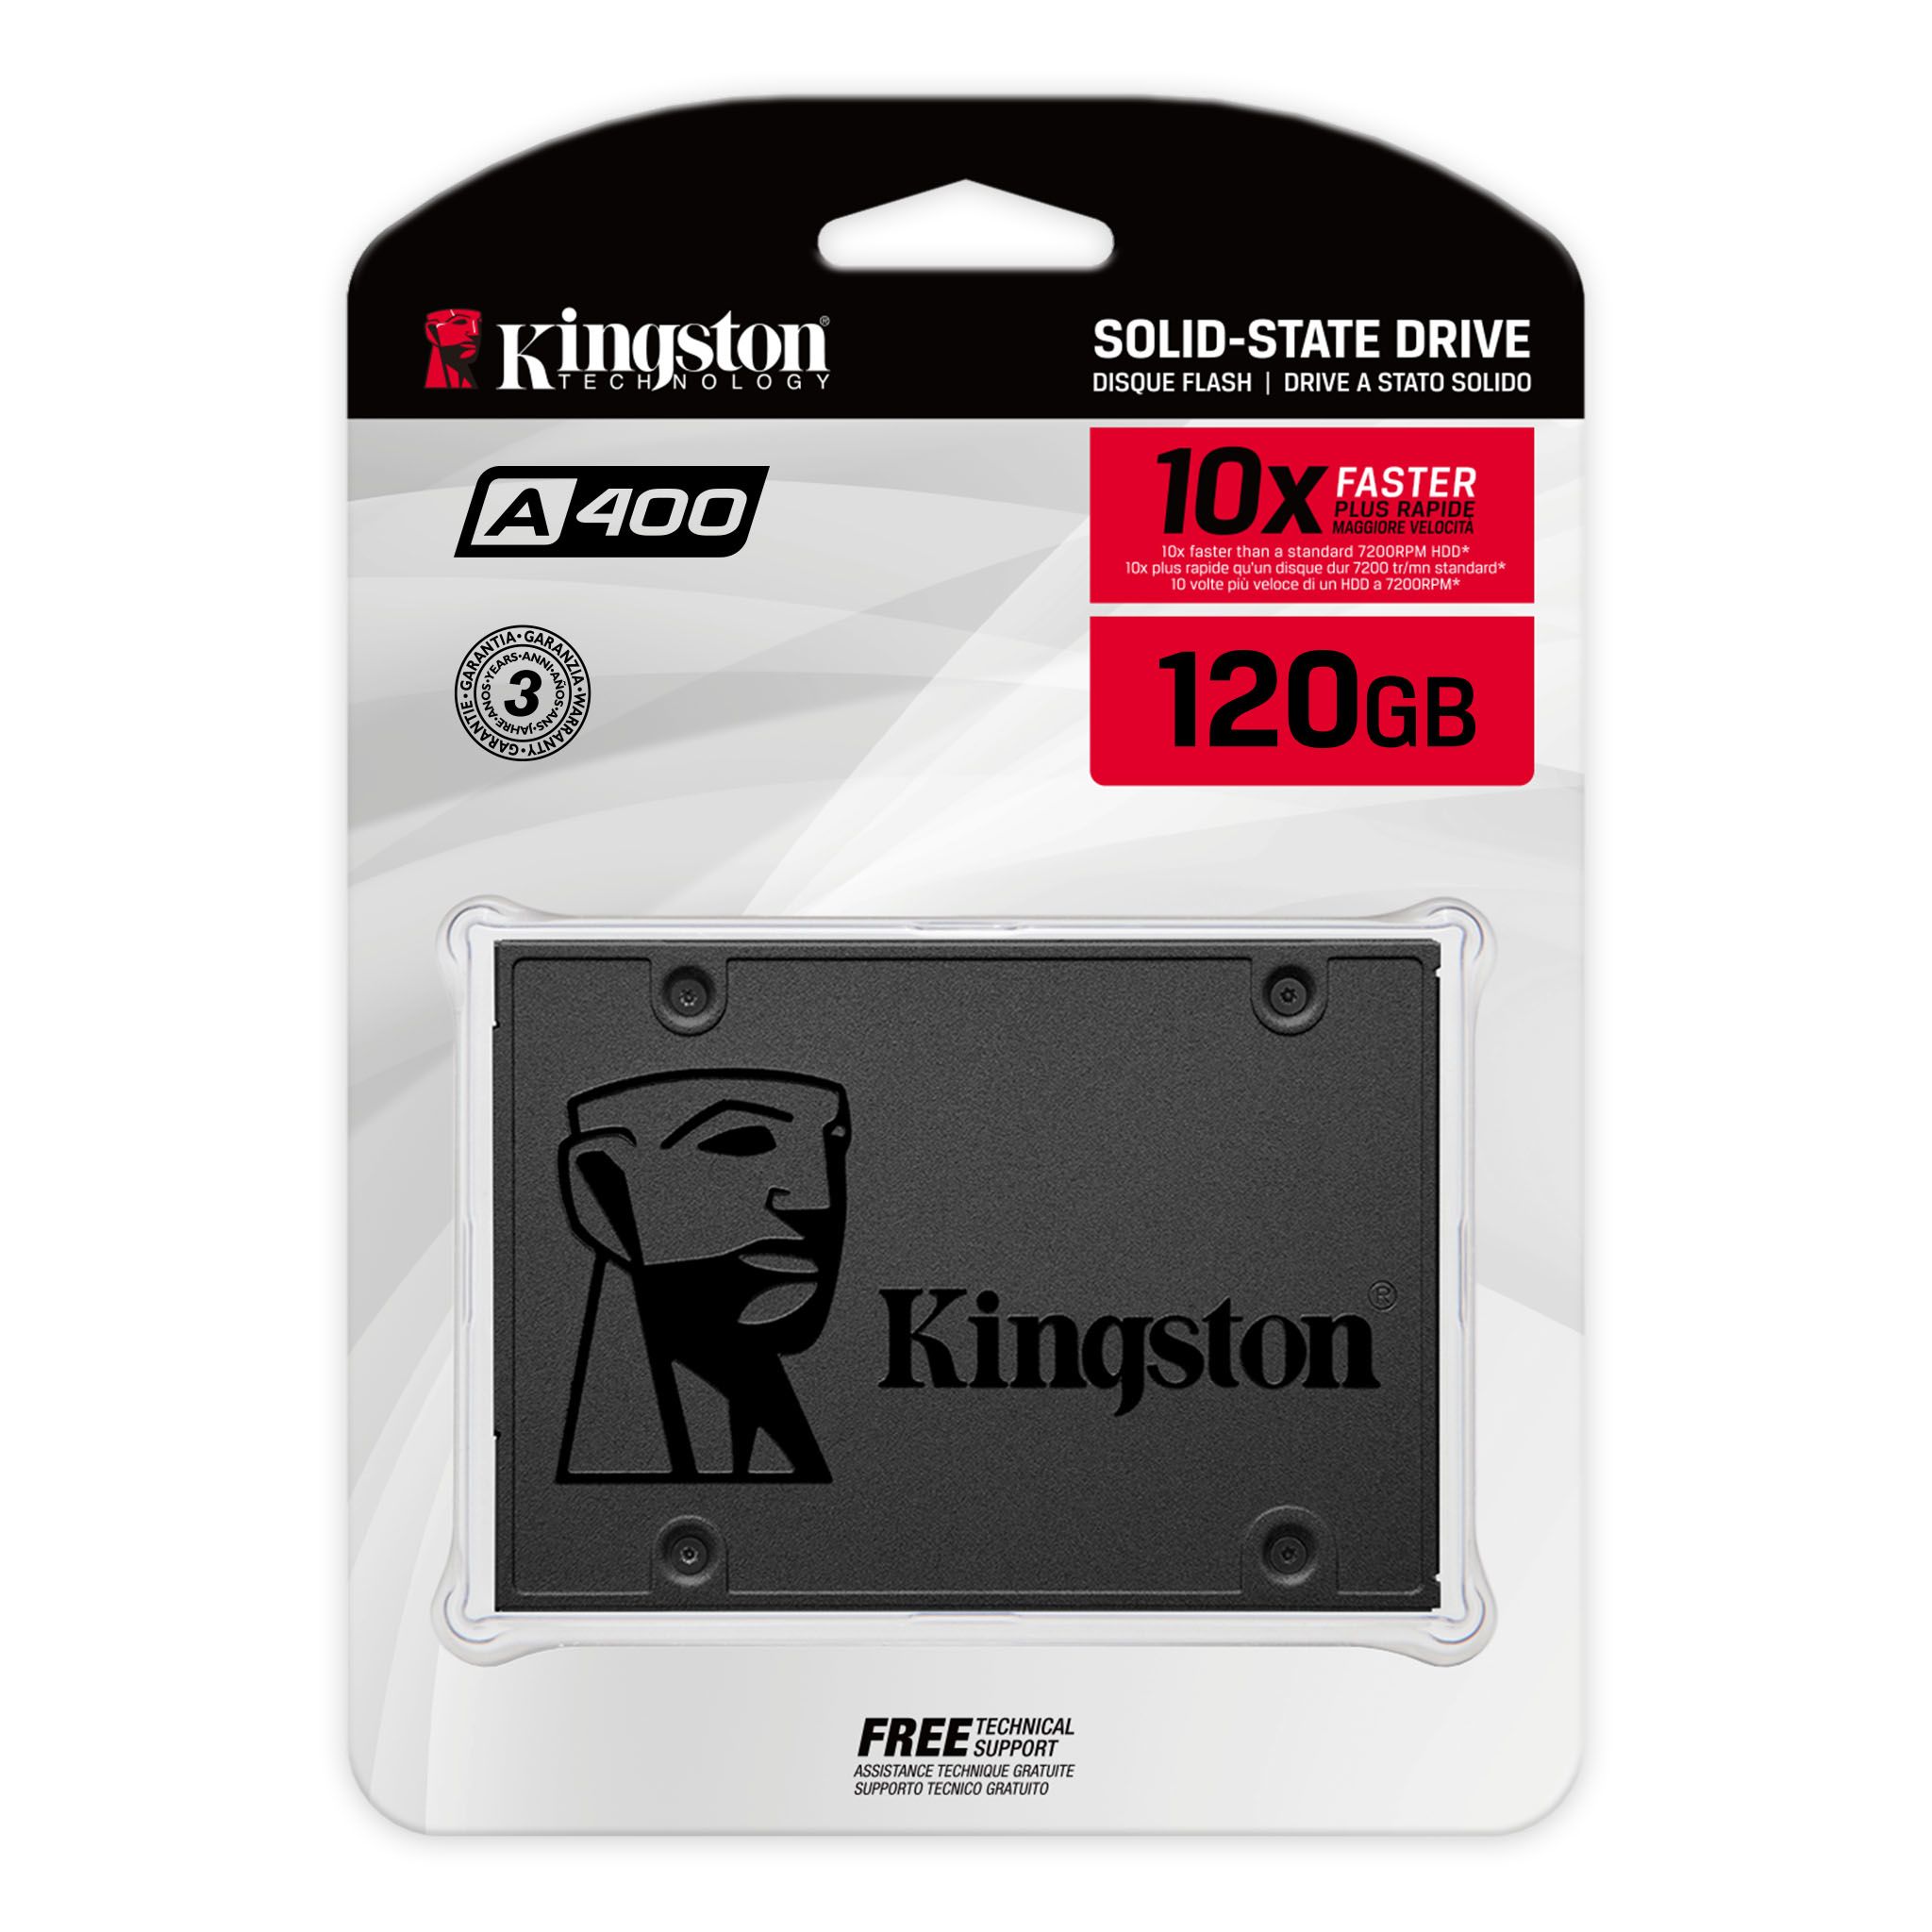 røgelse ansvar præcedens A400 Solid State Drive – 120GB–1.92TB - Kingston Technology